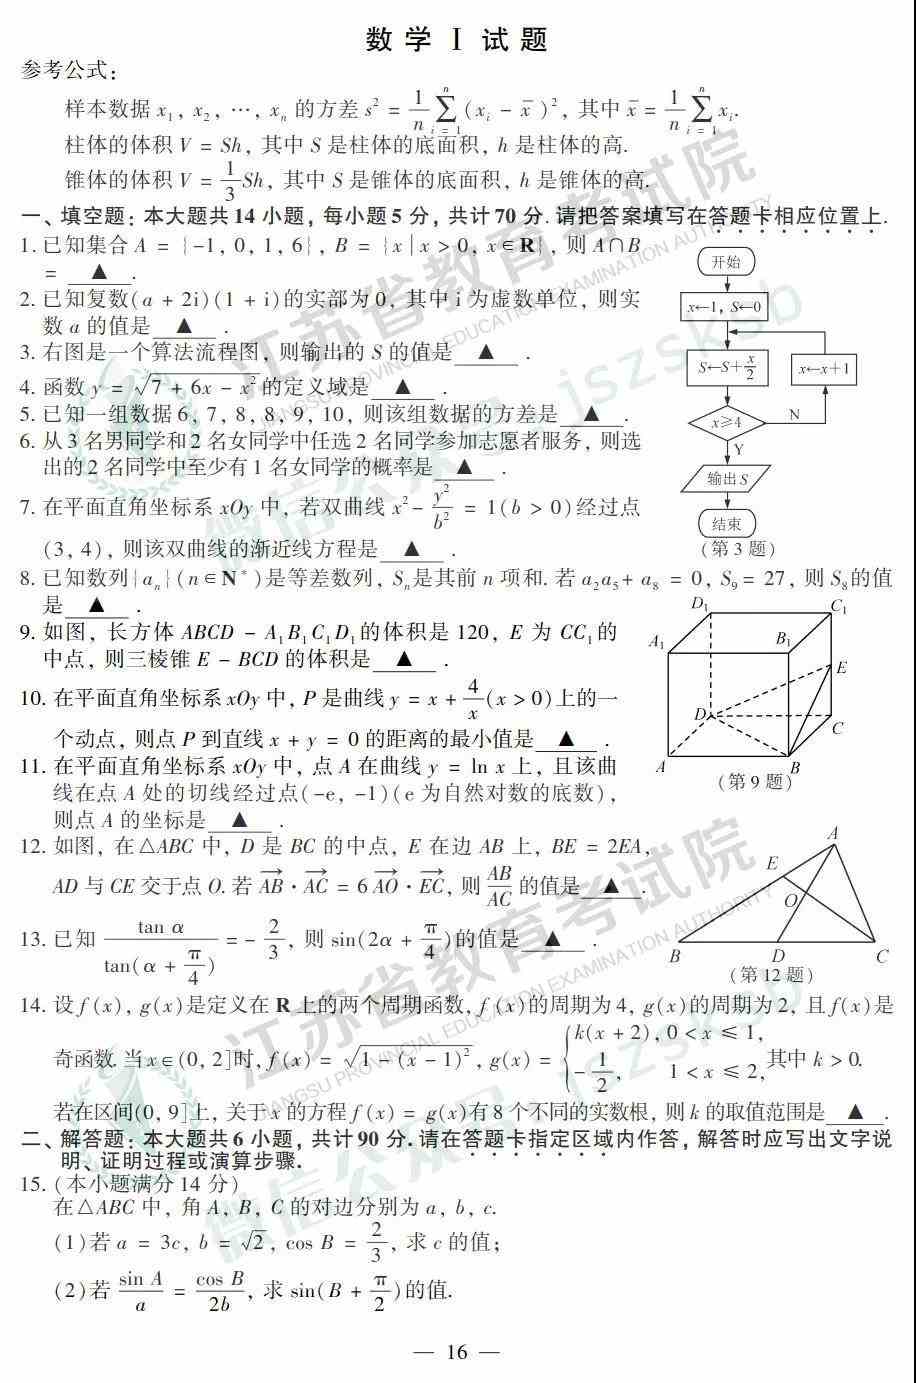 2019年高考江苏数学试题及答案解析【已公布】